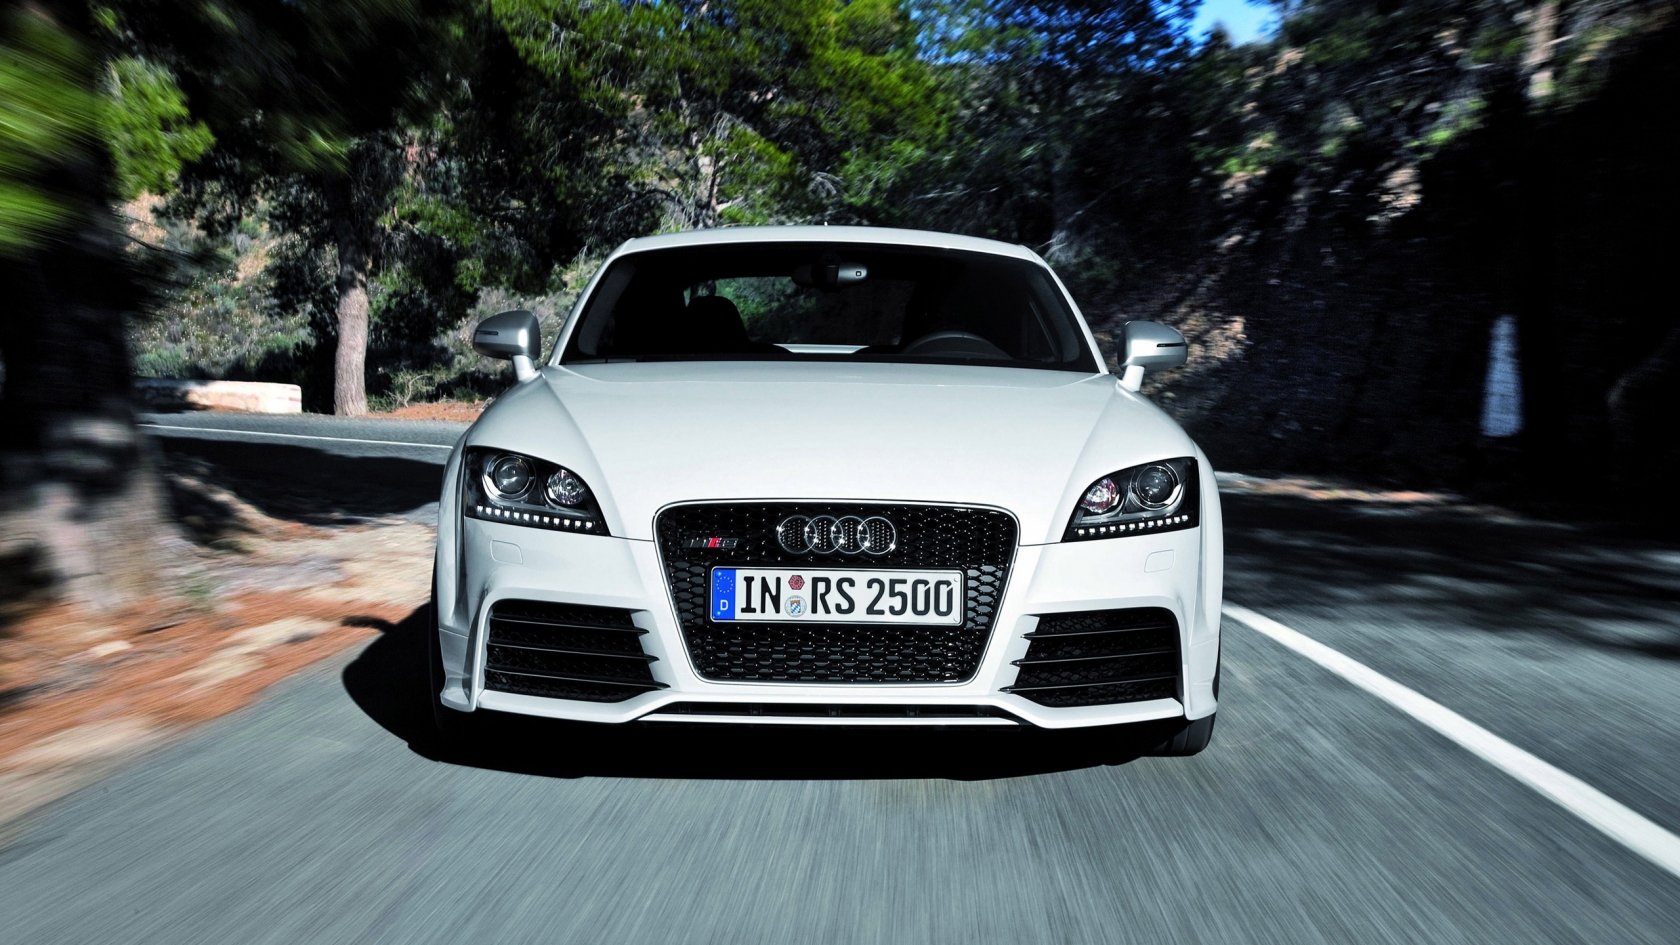 Audi TT RS 2012 Speed for 1680 x 945 HDTV resolution